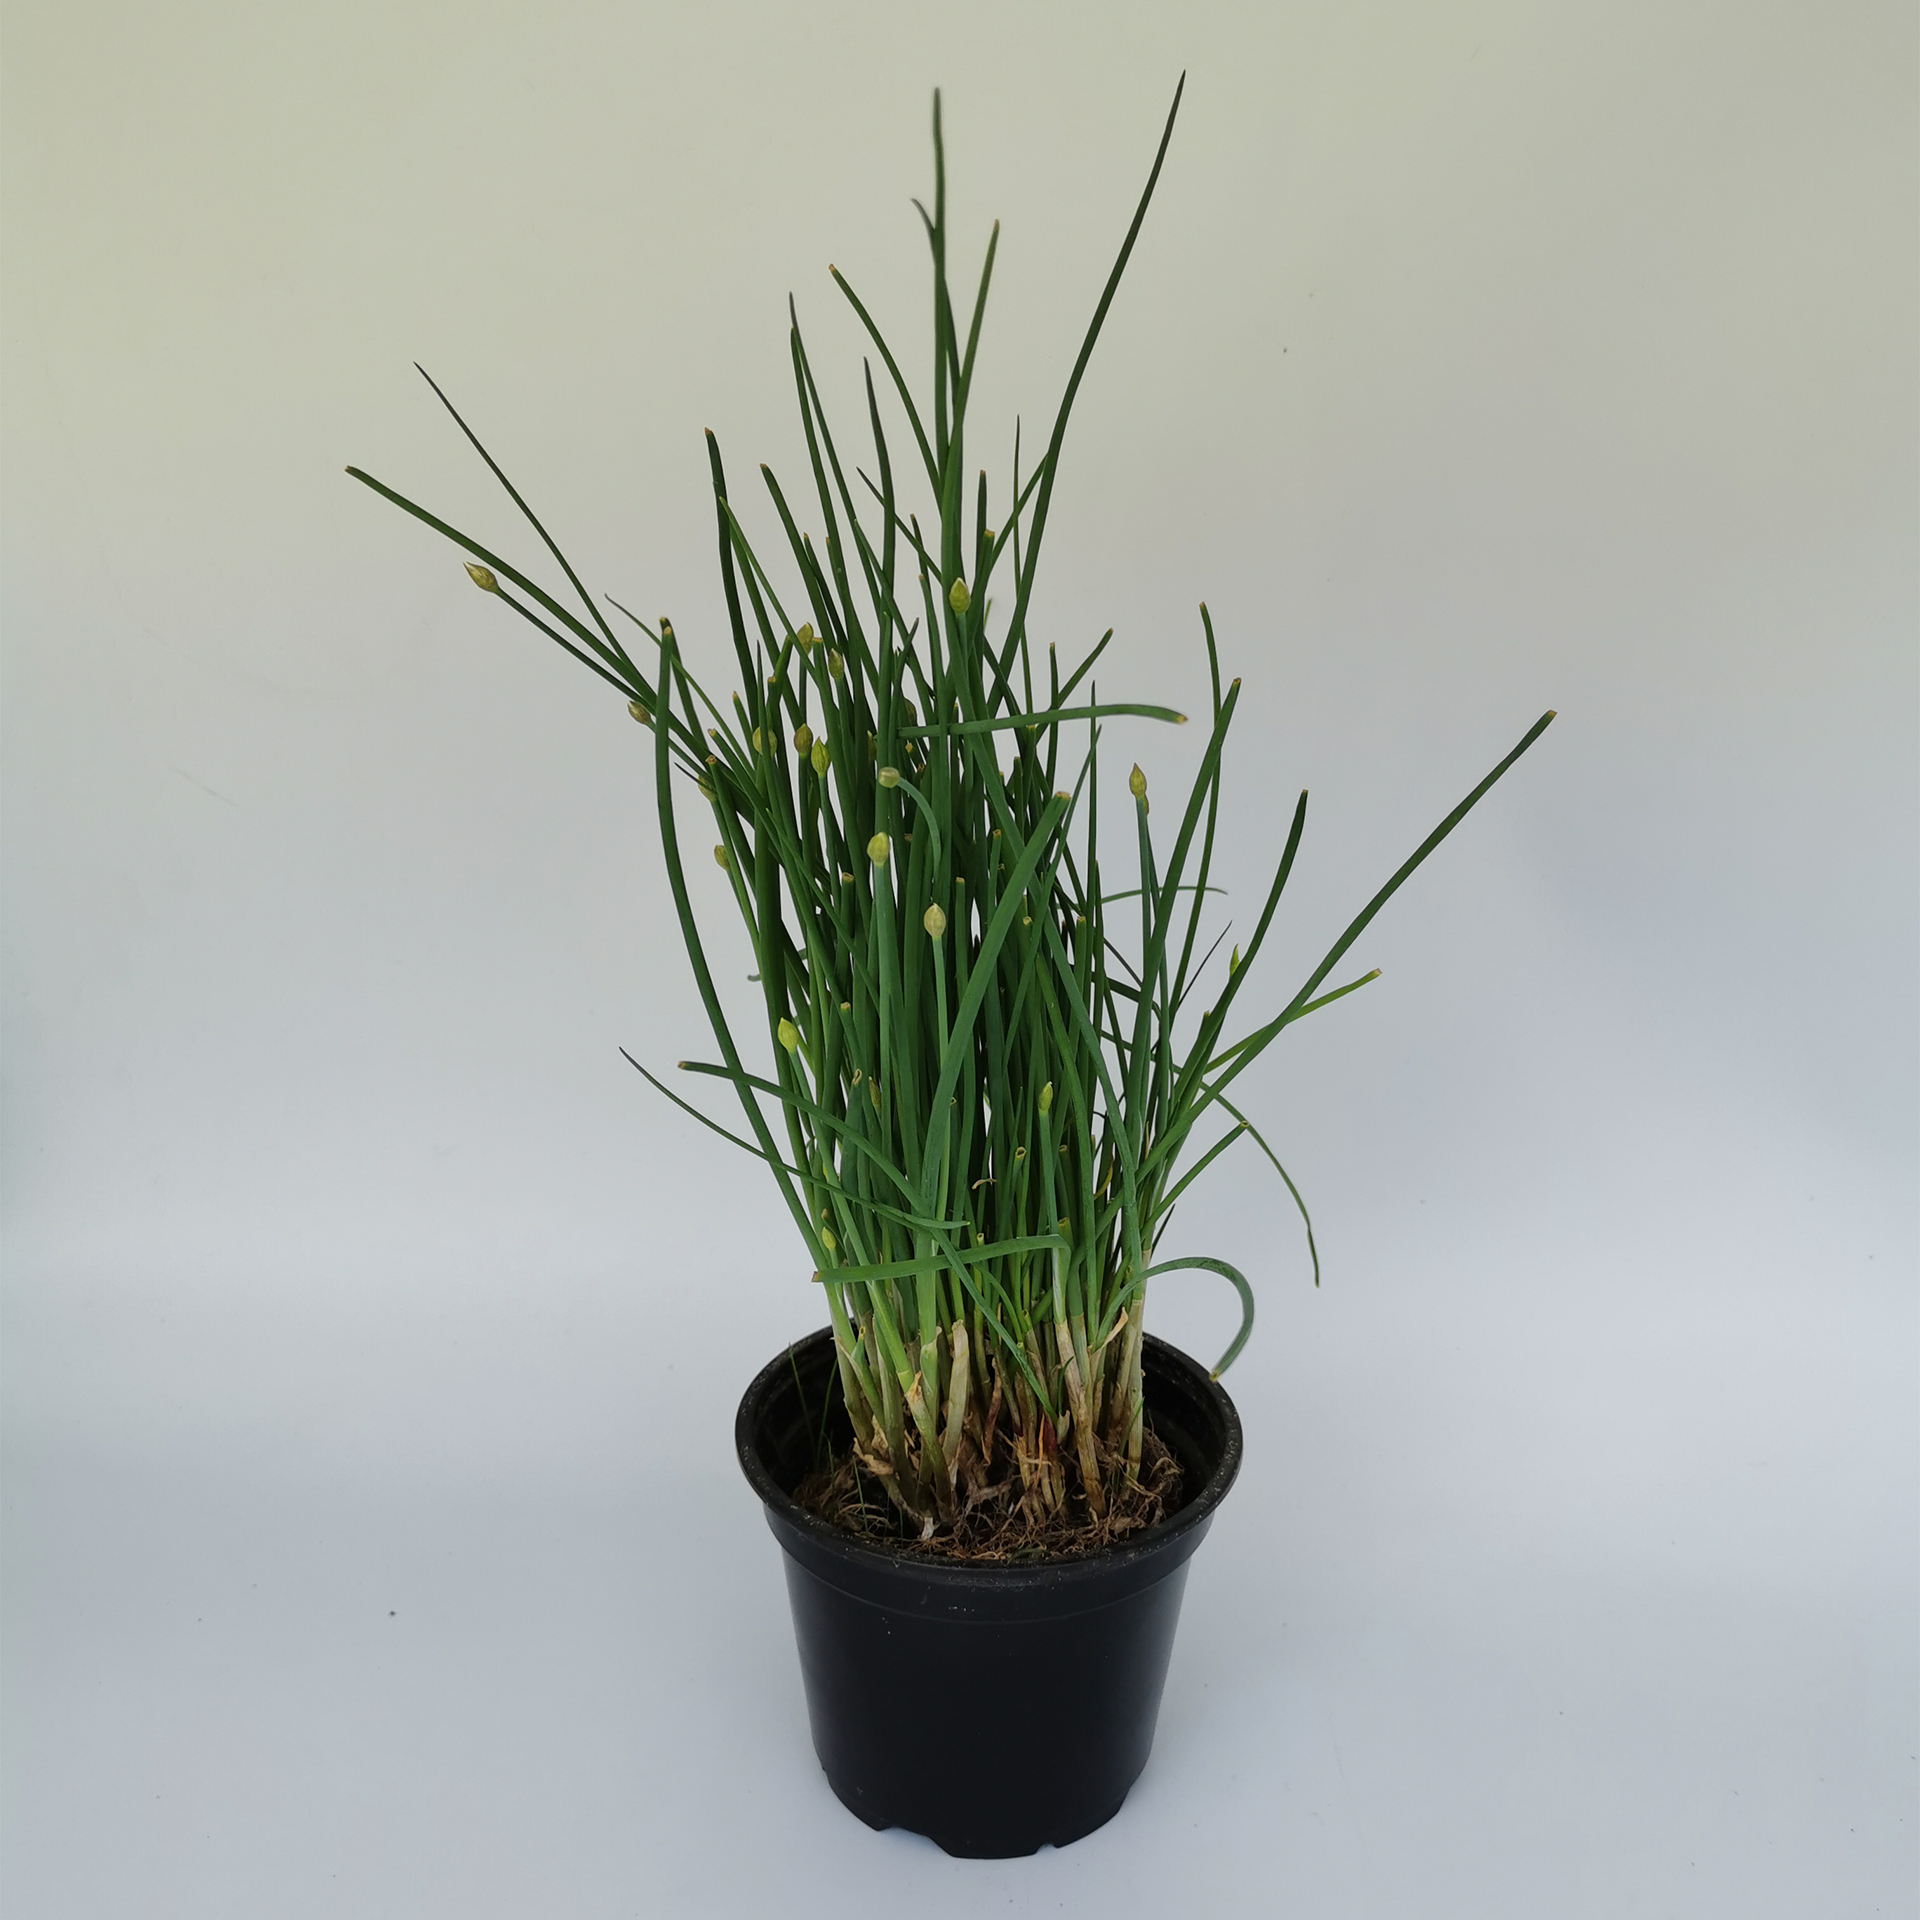 Schnittlauch - Allium schoenoprasum, 12cm Topf